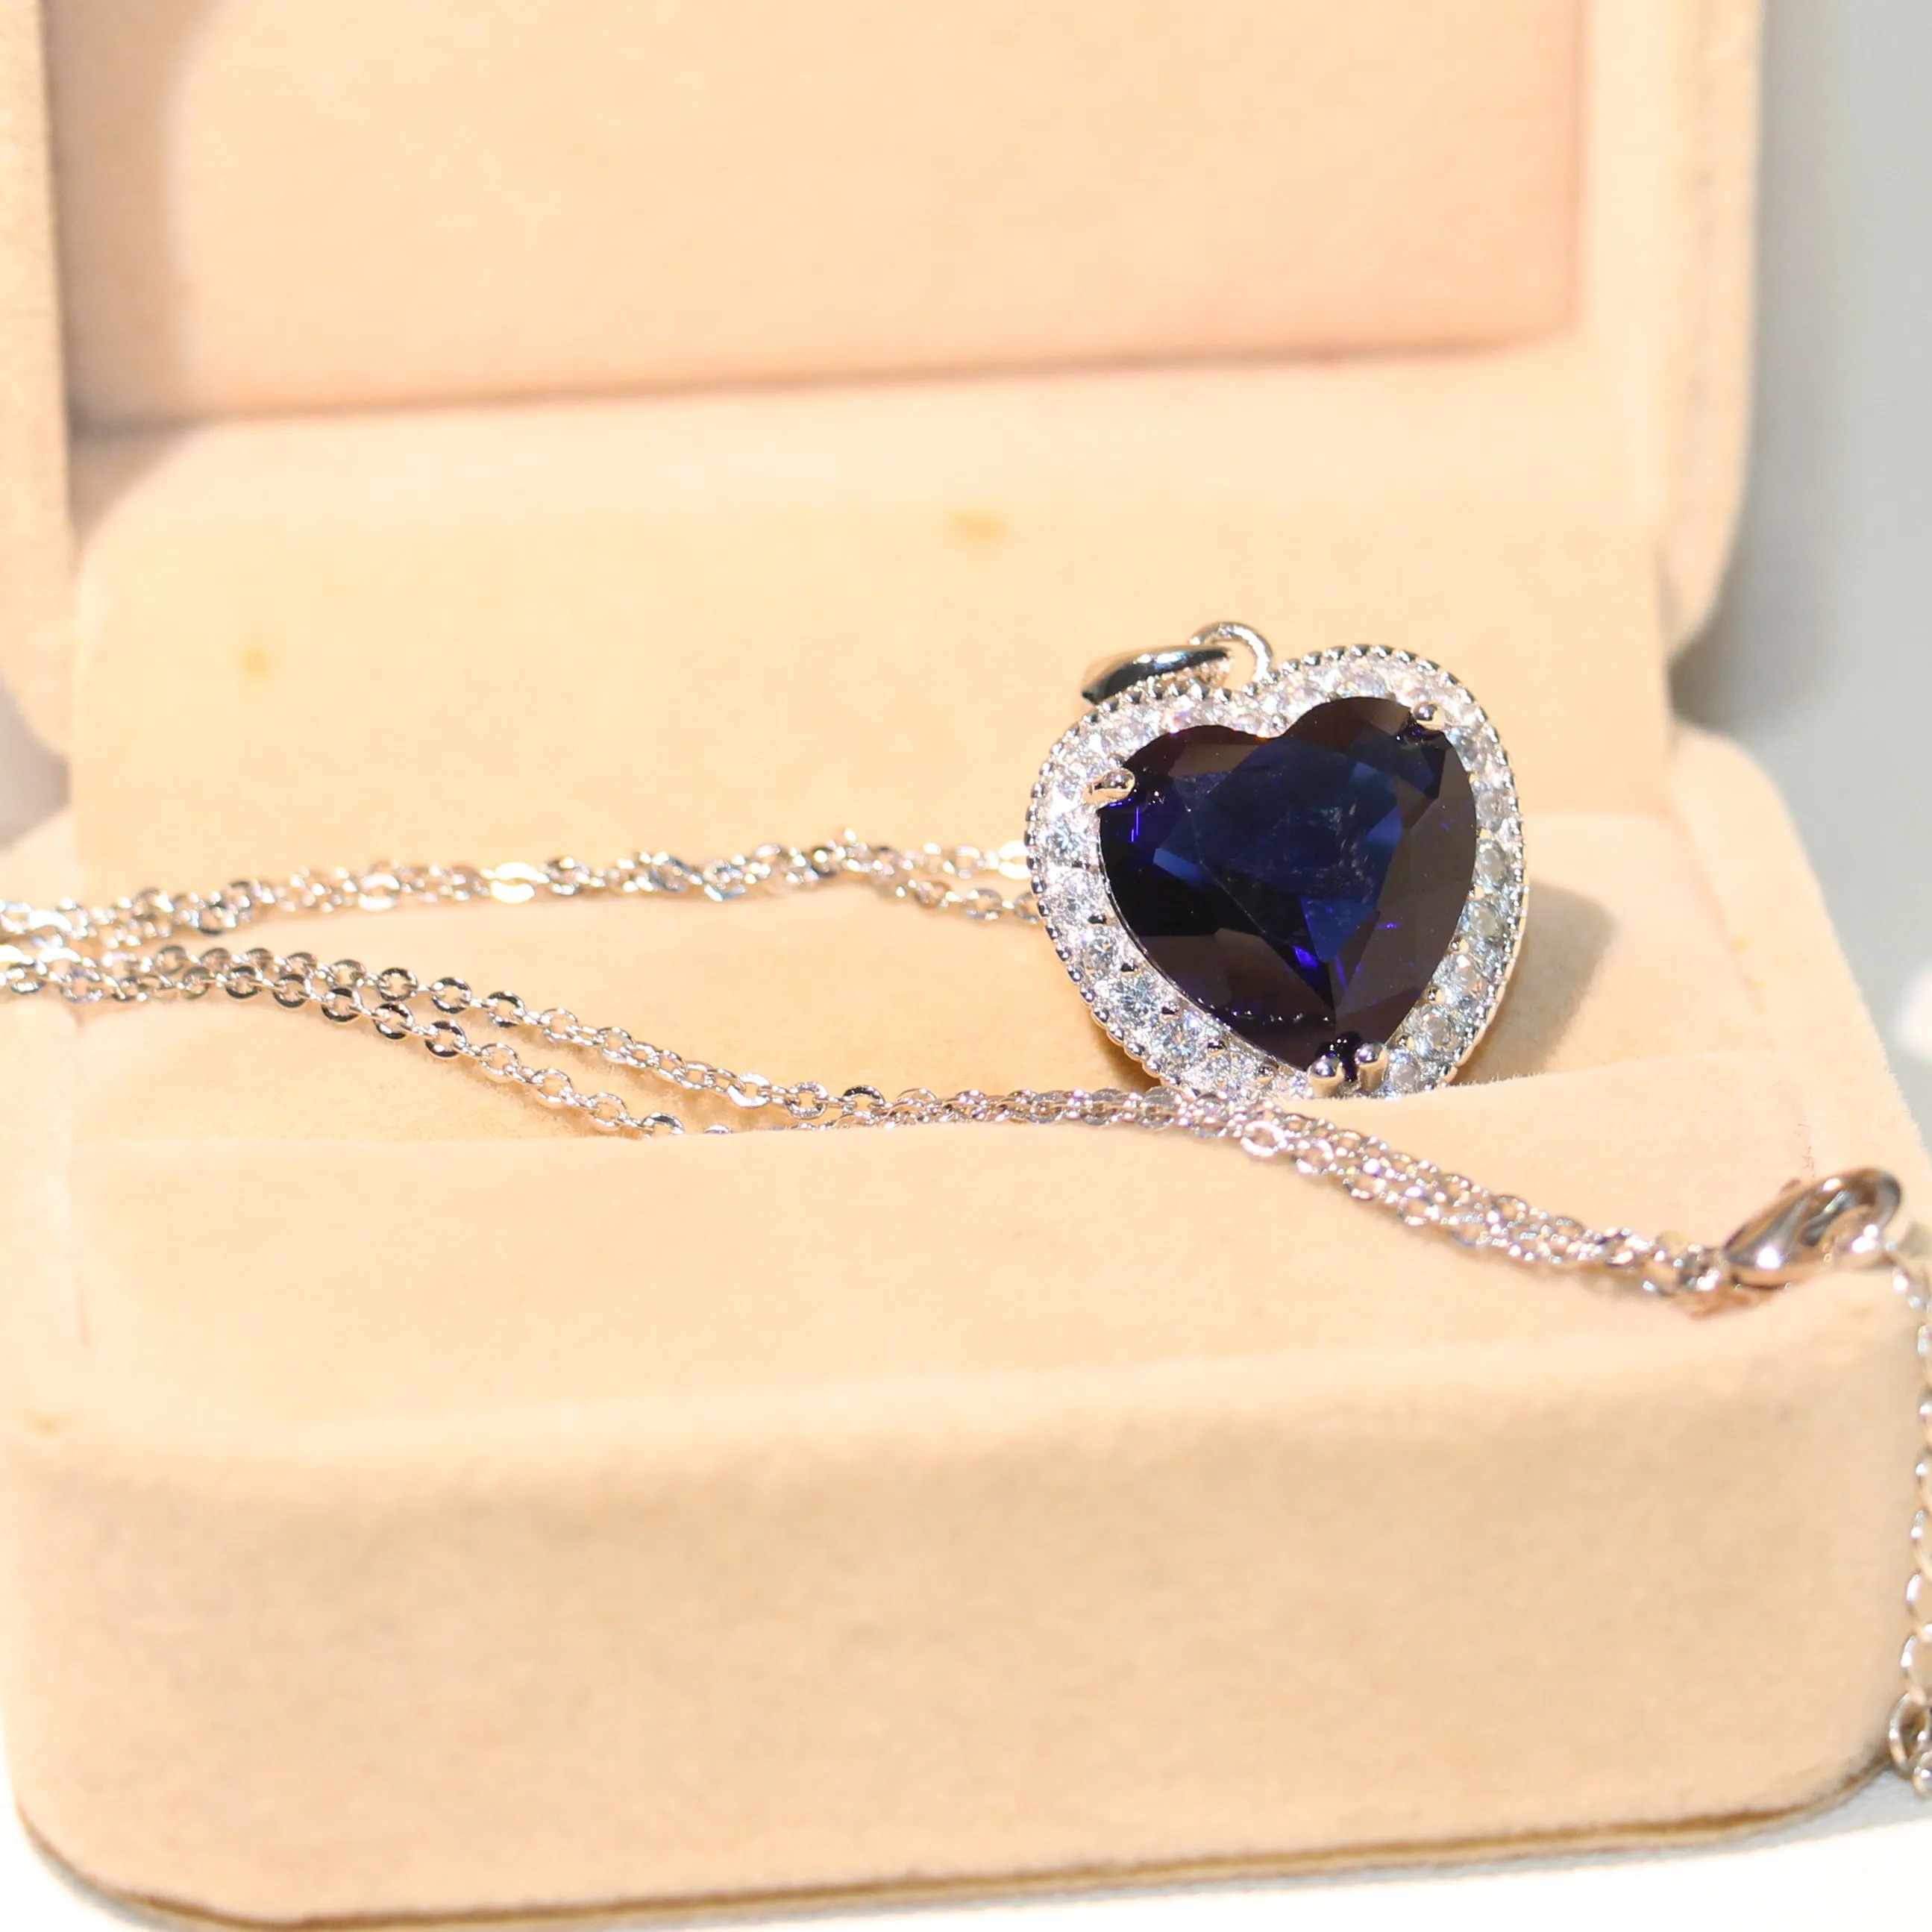 Coeur choucong Unique Brand New Luxury Jewelry 925 Sterling Silver Big Blue Sapphire CZ Diamond Party Chain Pendentif Collier Pour Femmes Cadeau